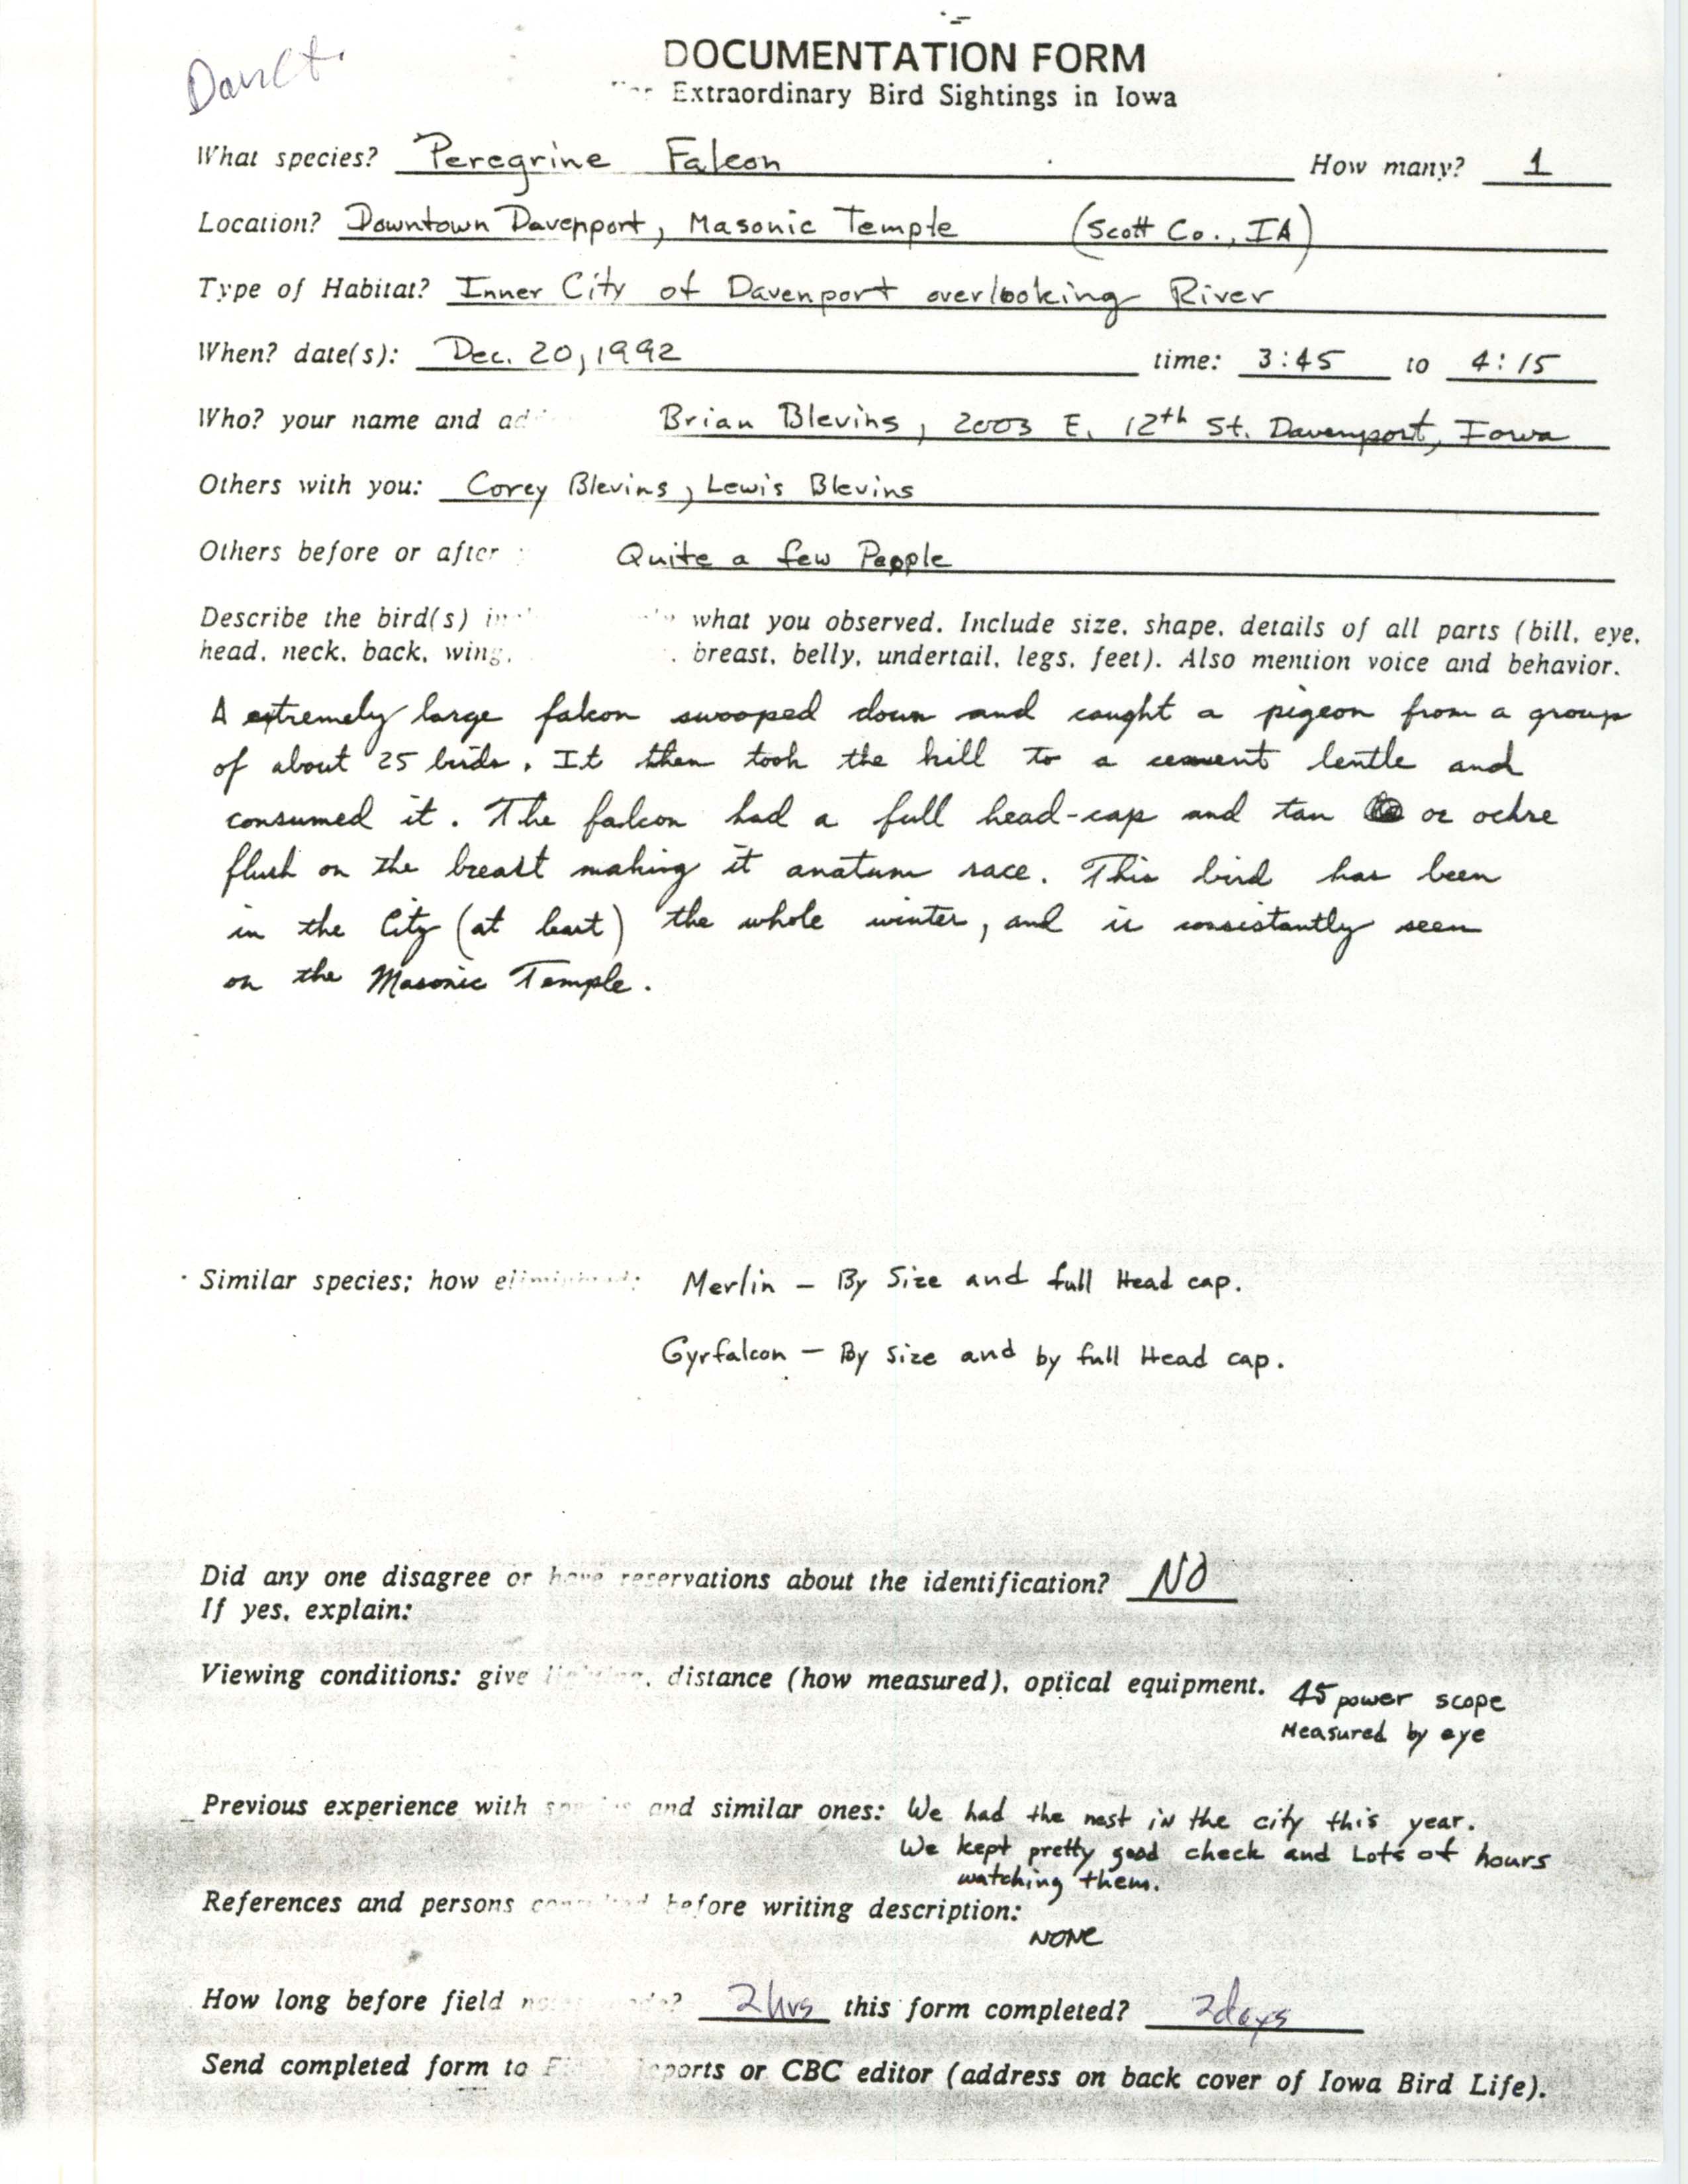 Rare bird documentation form for Peregrine Falcon at Davenport, 1992